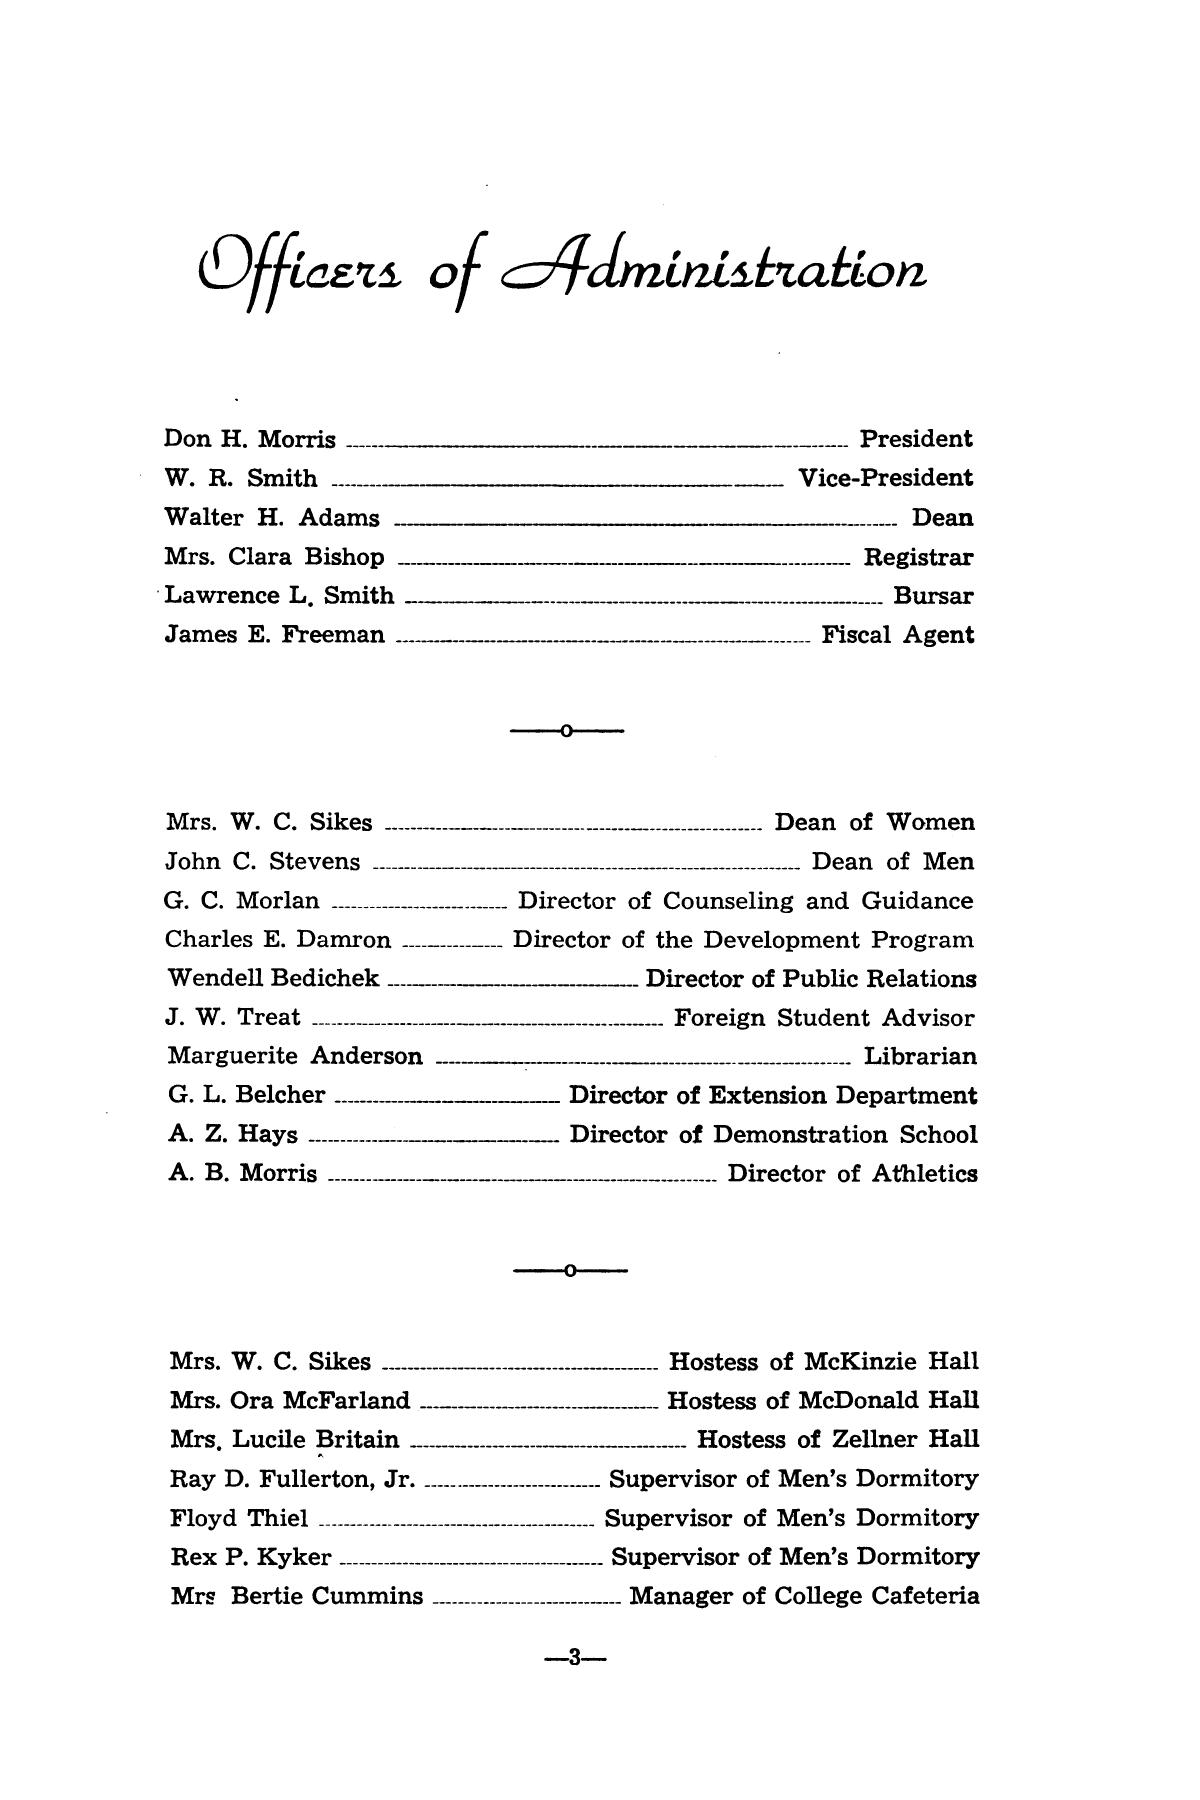 Catalog of Abilene Christian College, 1950
                                                
                                                    3
                                                